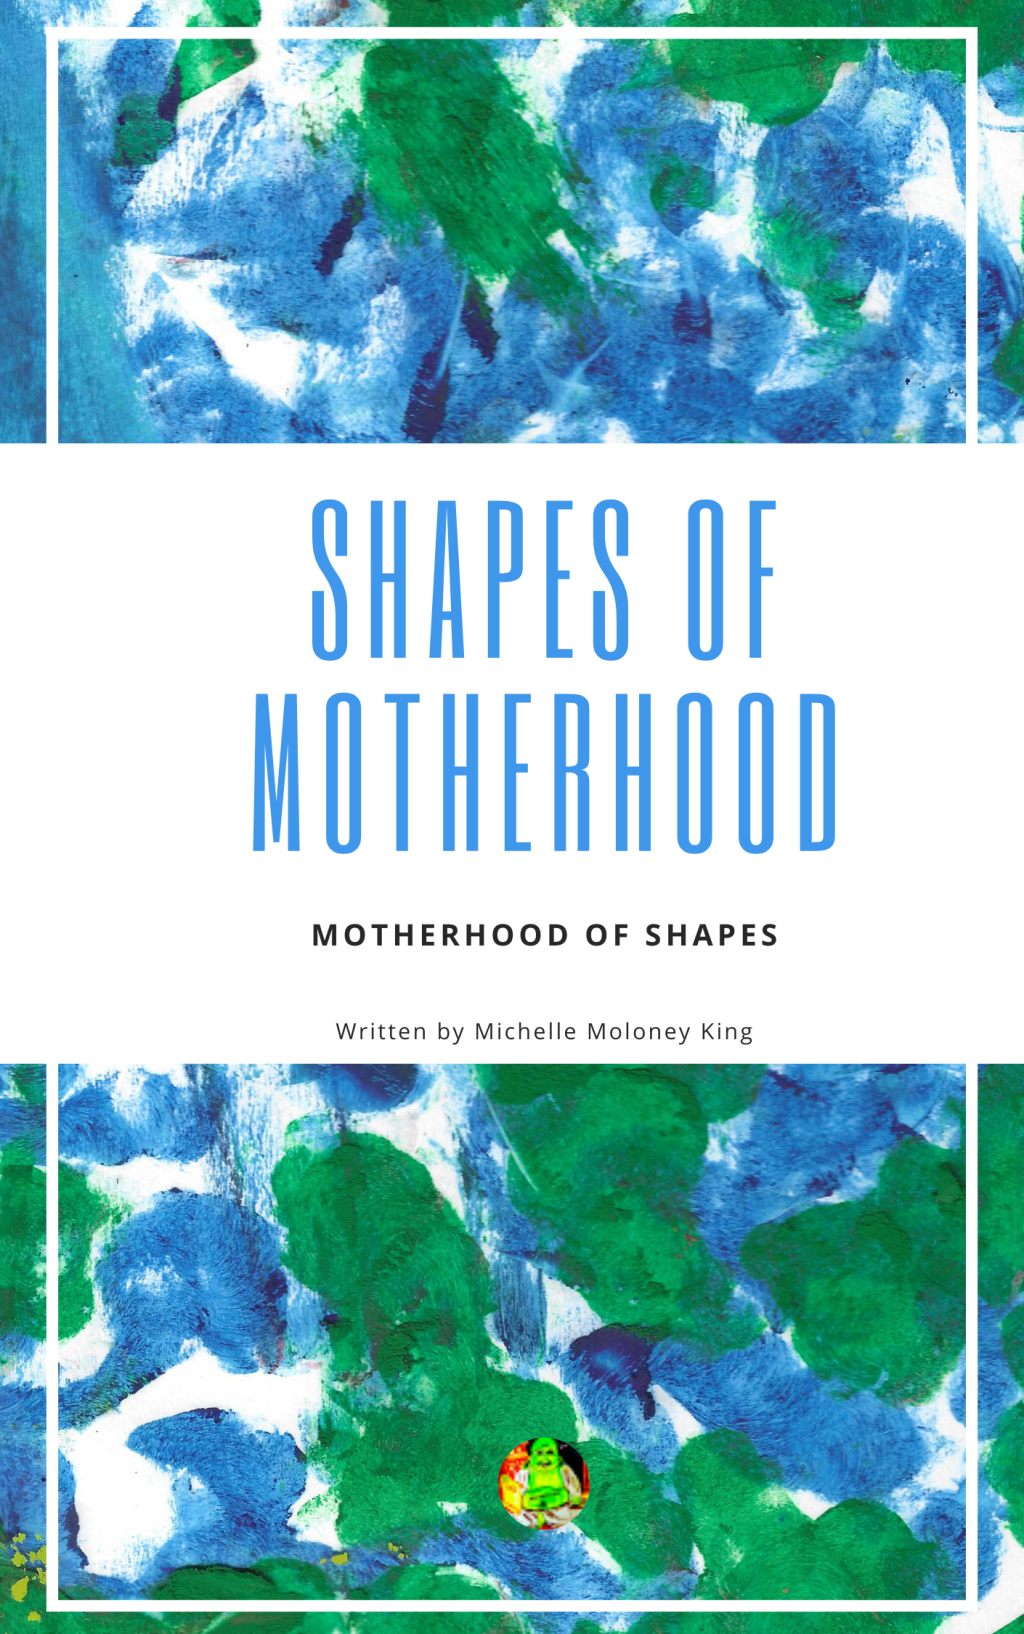 Shapes of Motherhood